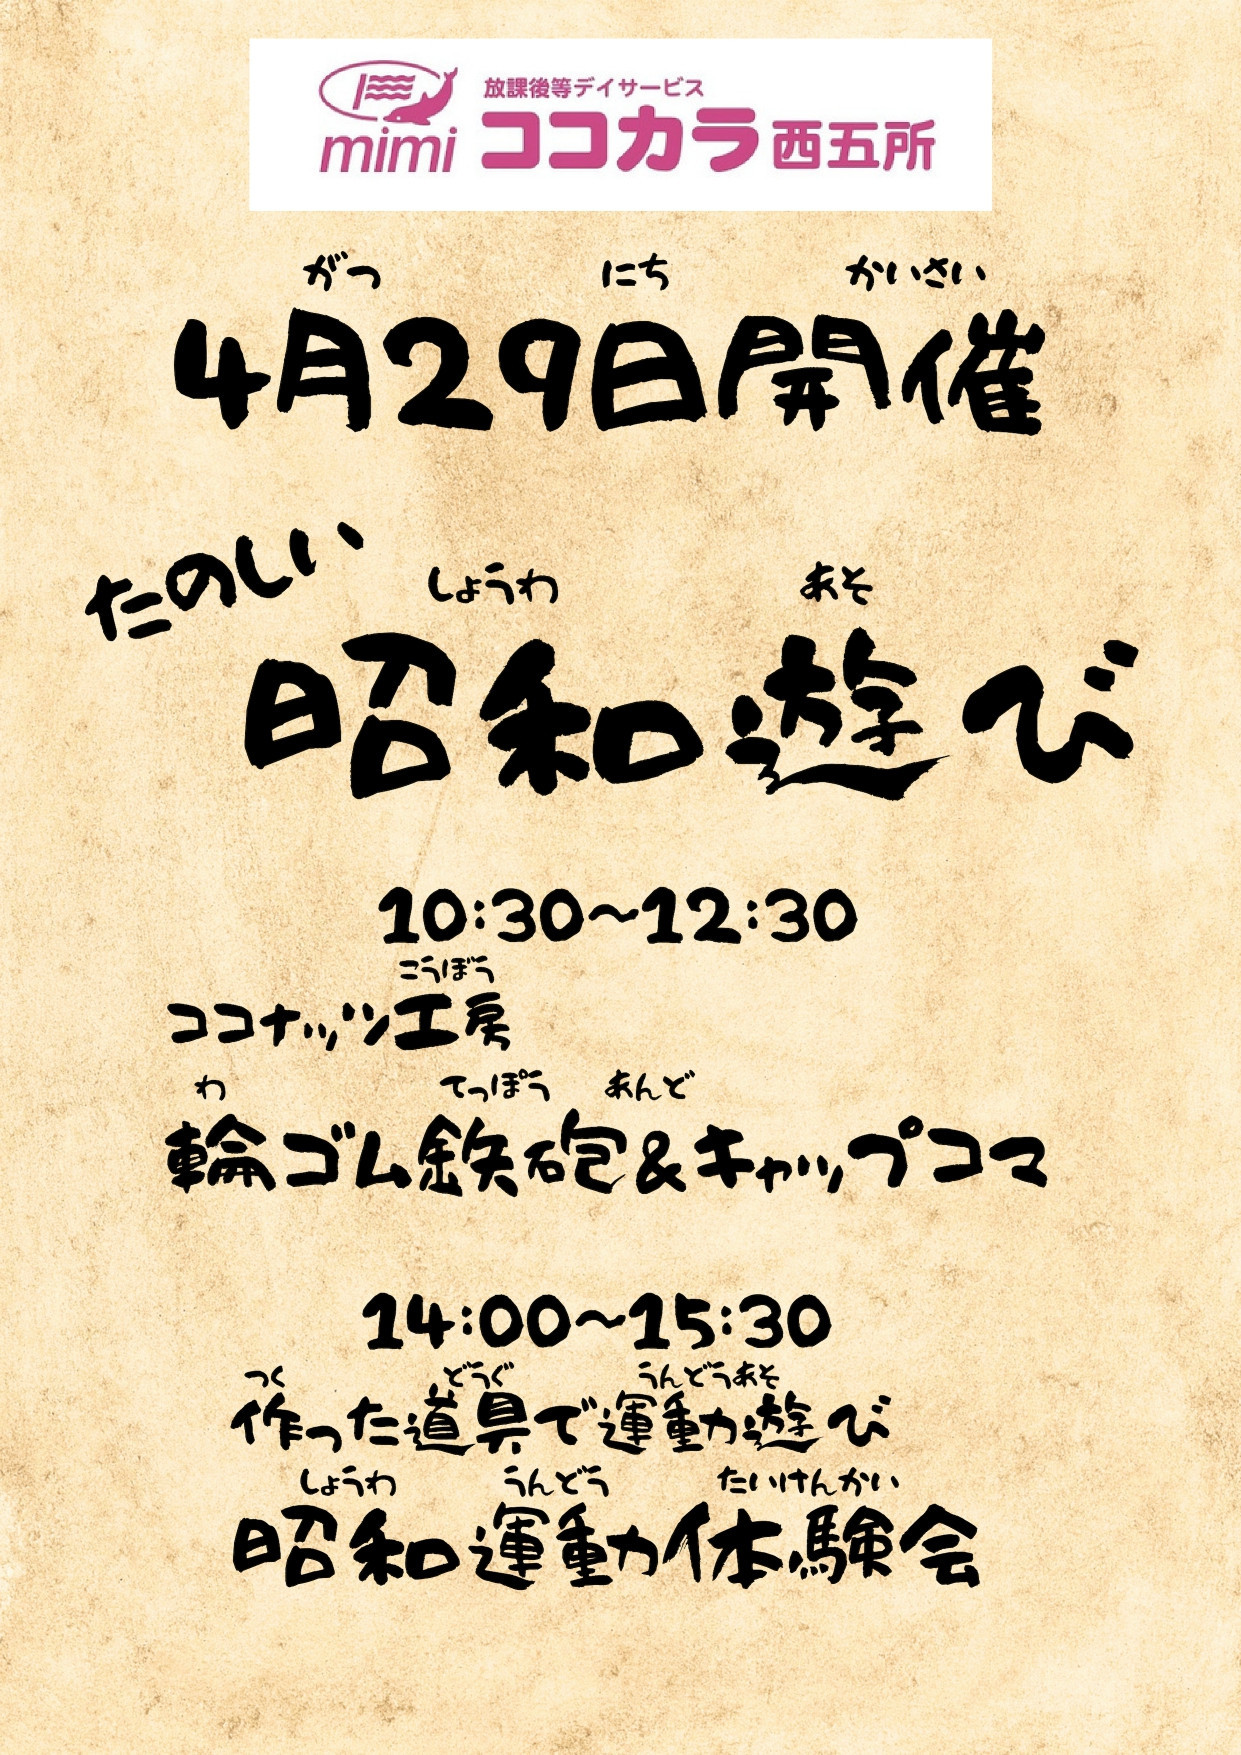 昭和の日イベント_page-0001